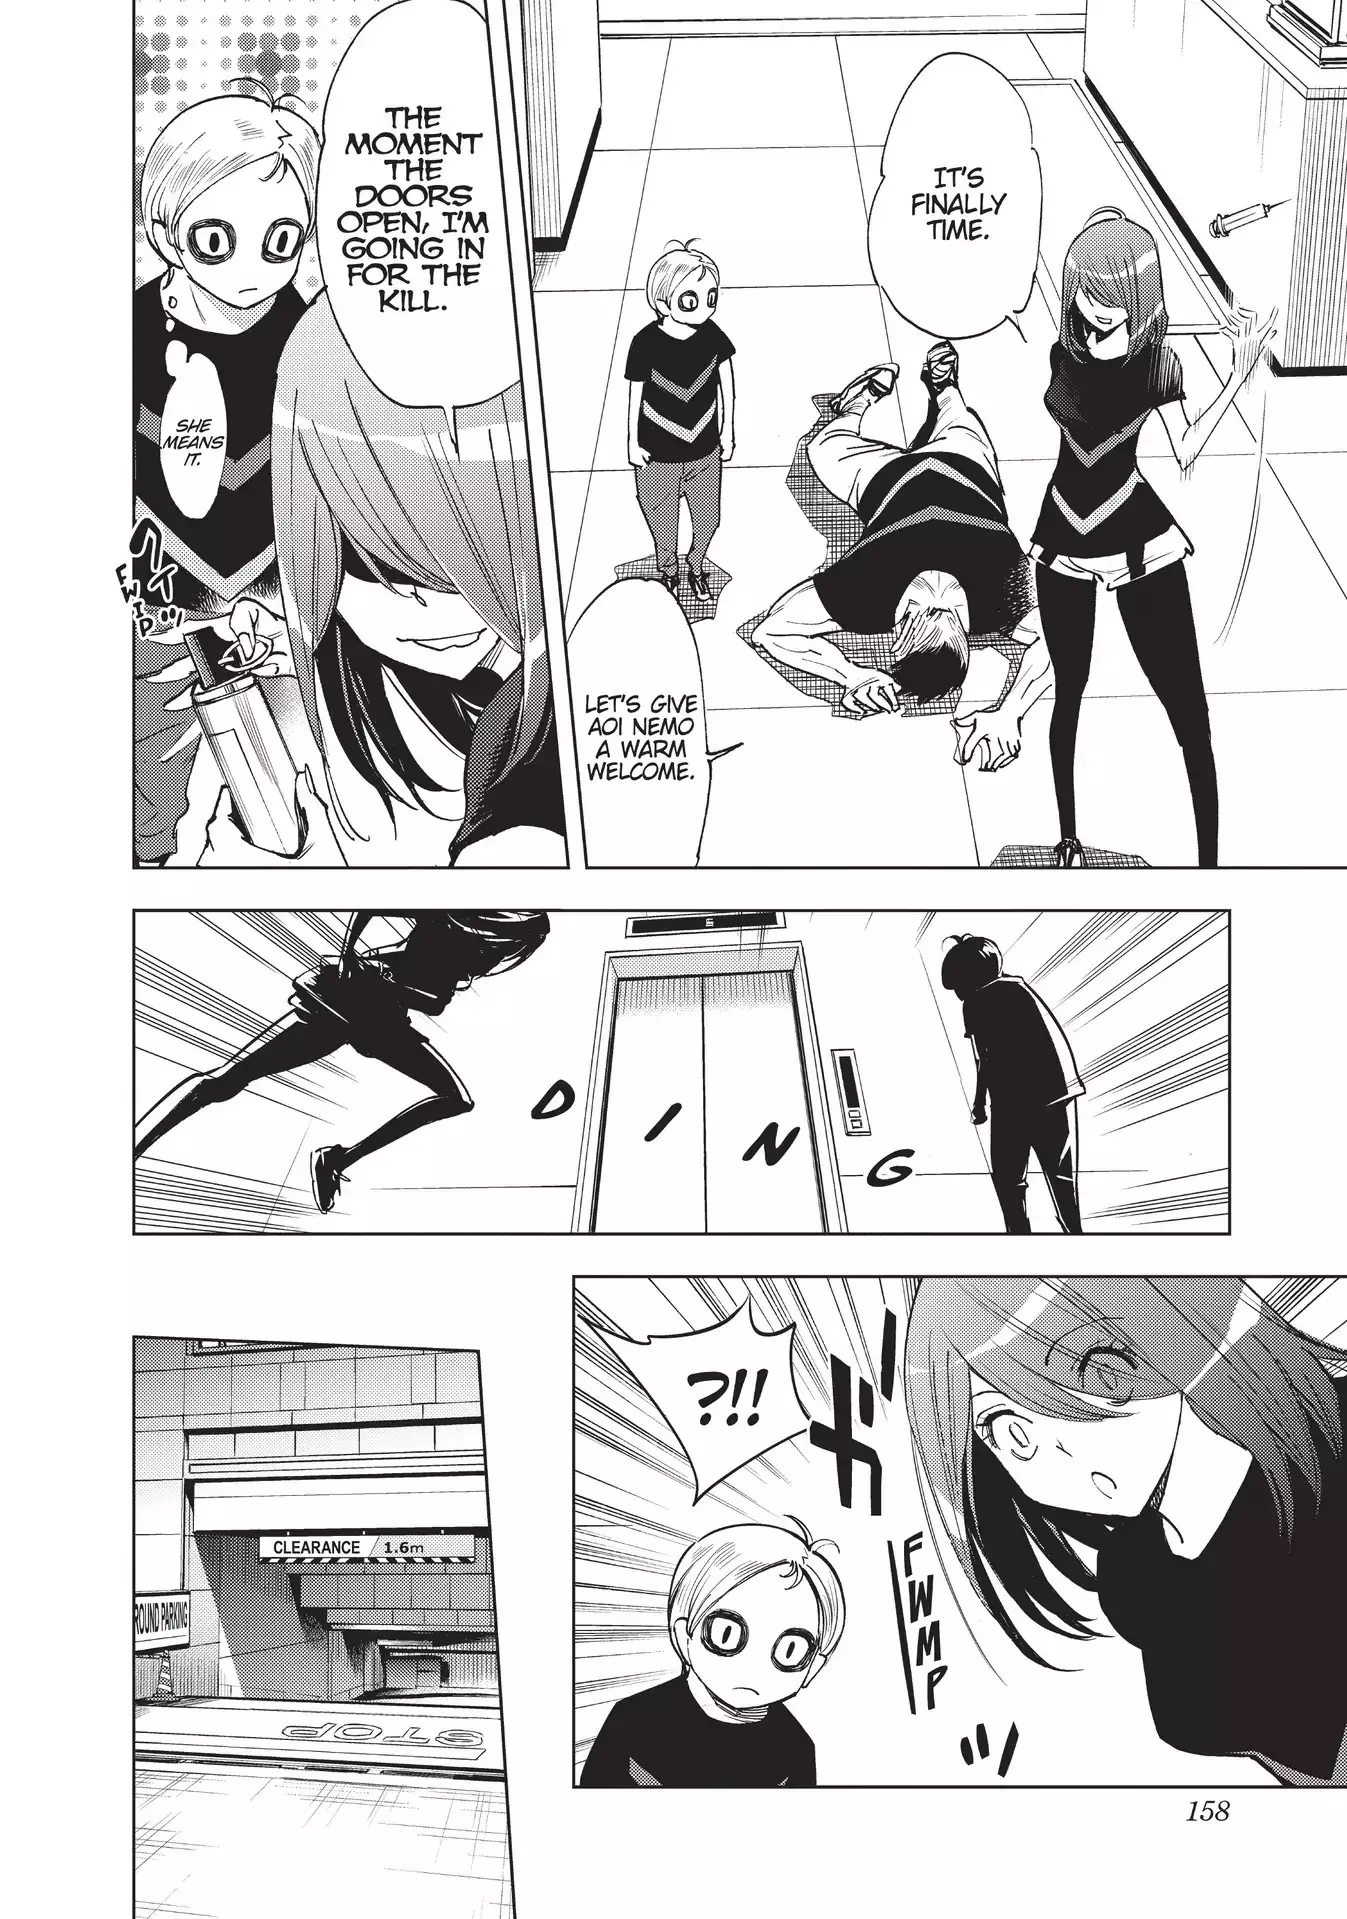 Kiruru Kill Me - 30 page 8-e100ae3a